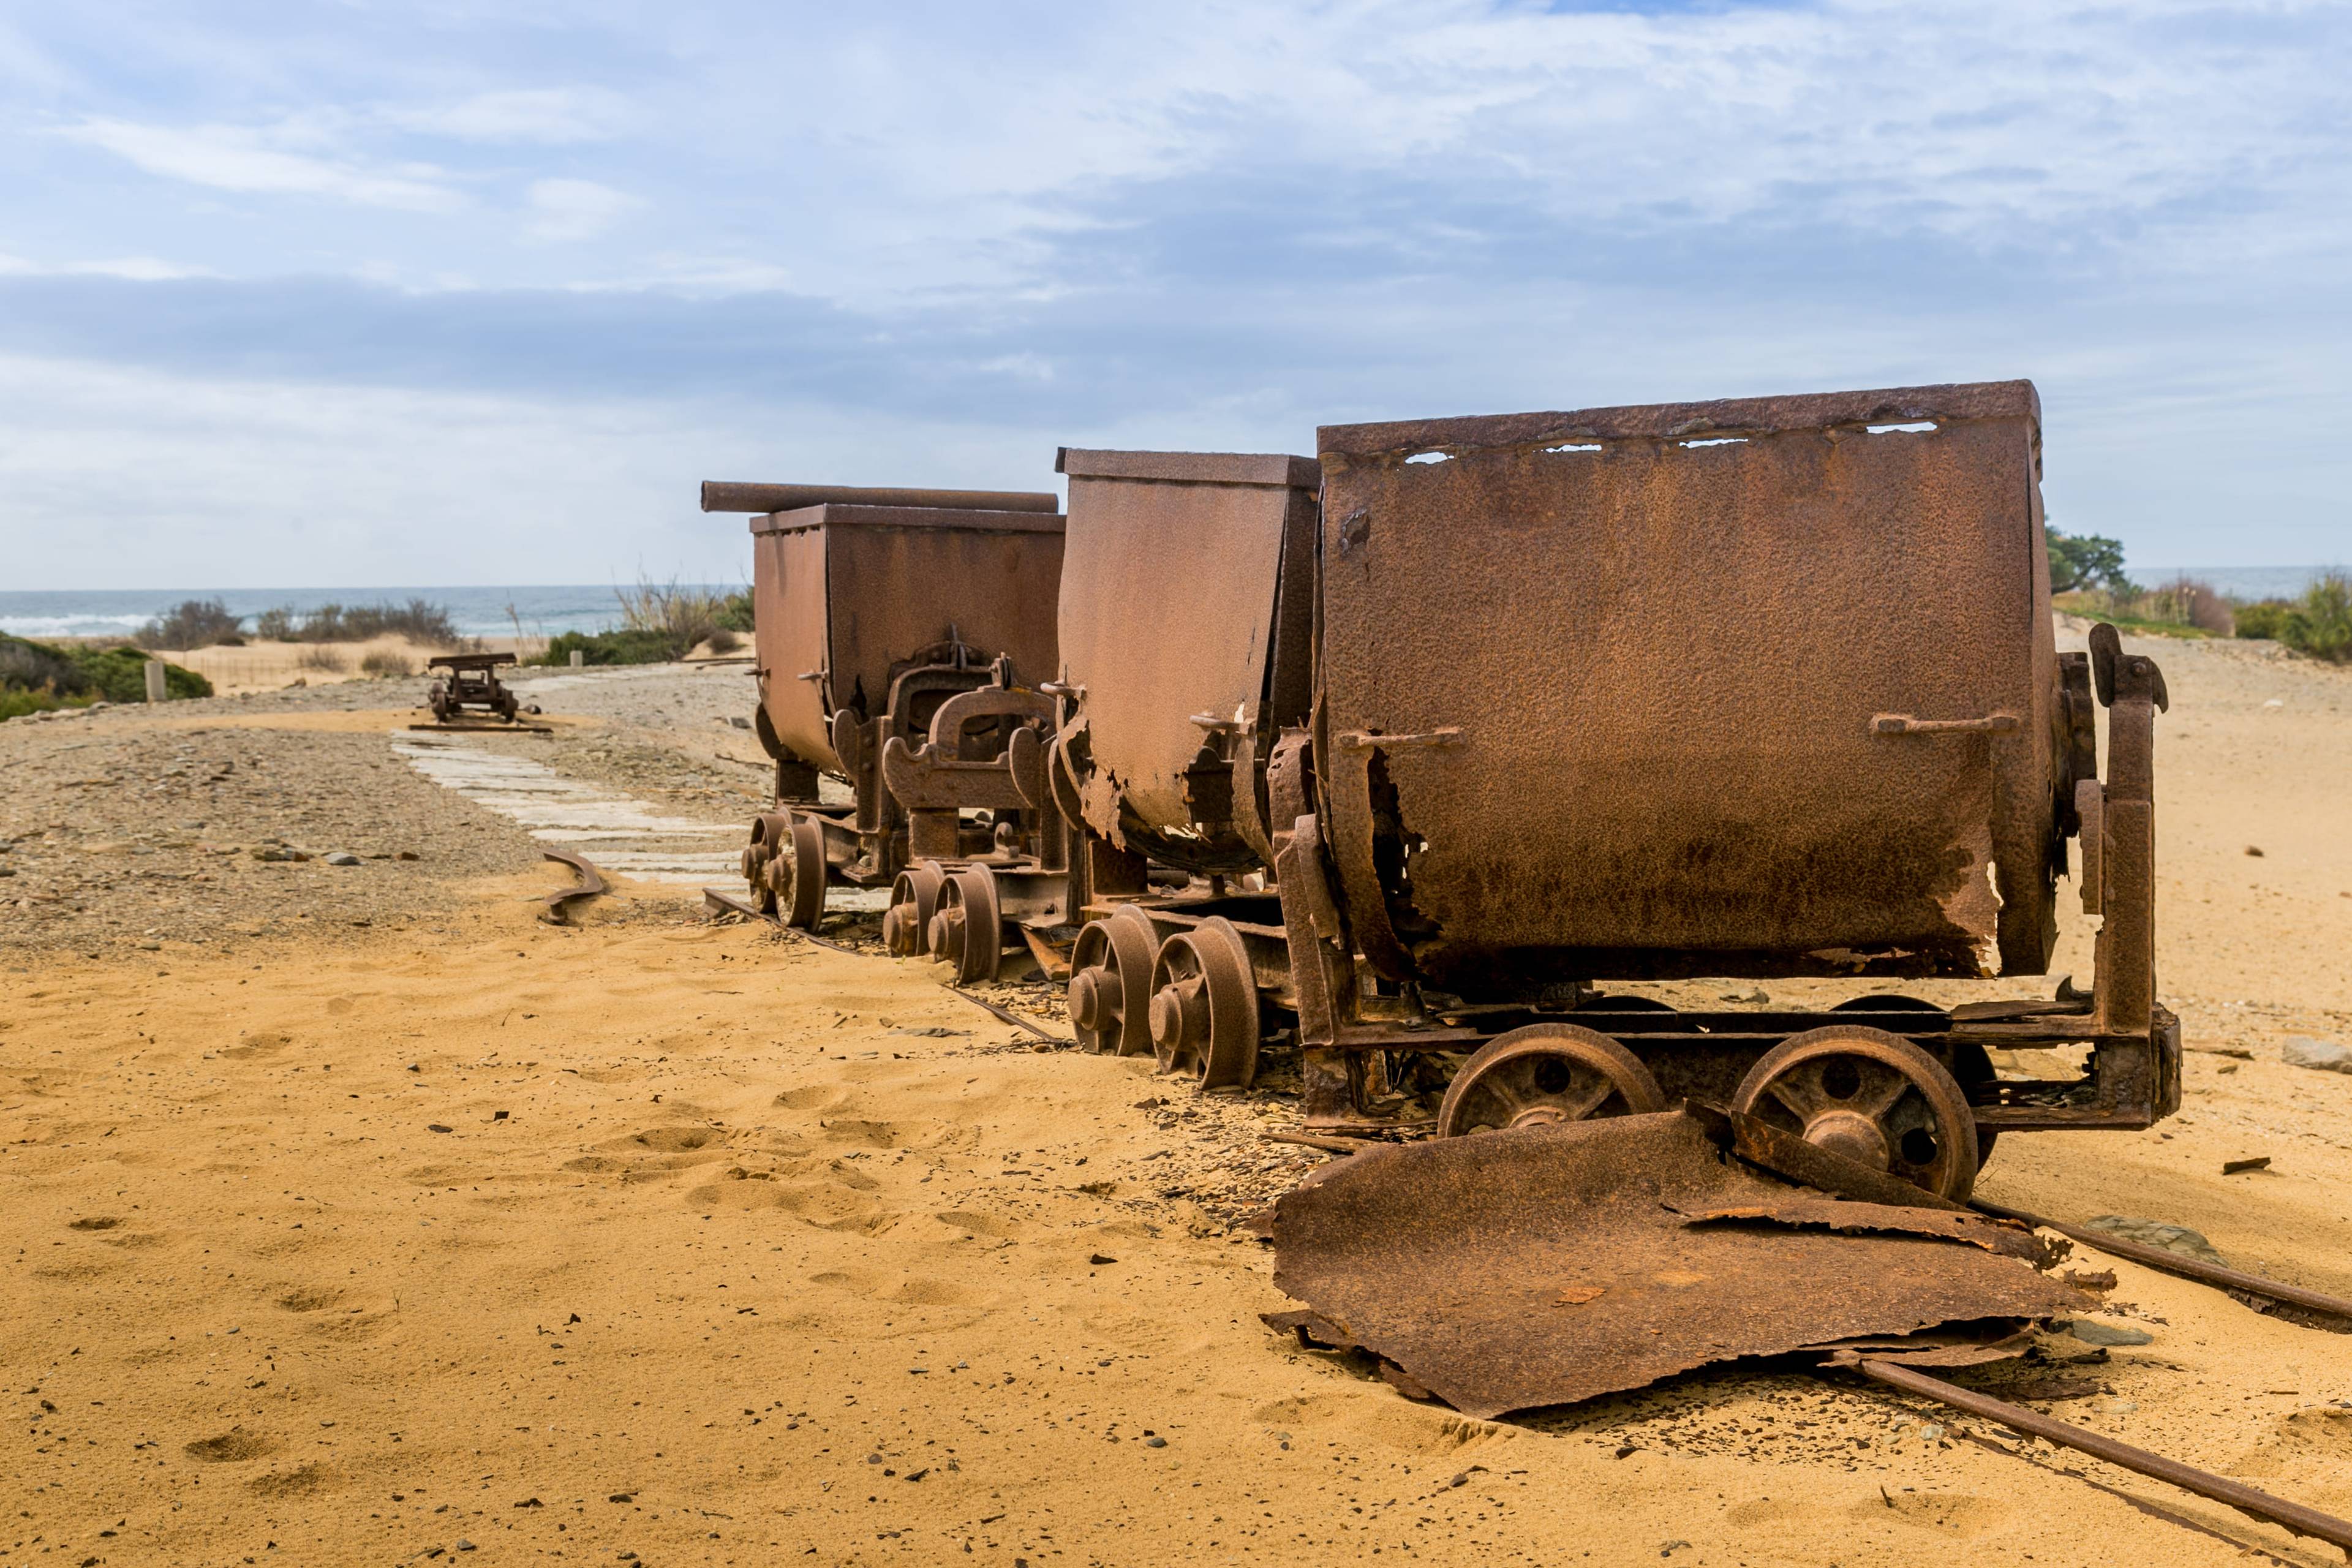 carrelli da miniera abbandonati sulla spiaggia a ingurtosu in sardegna